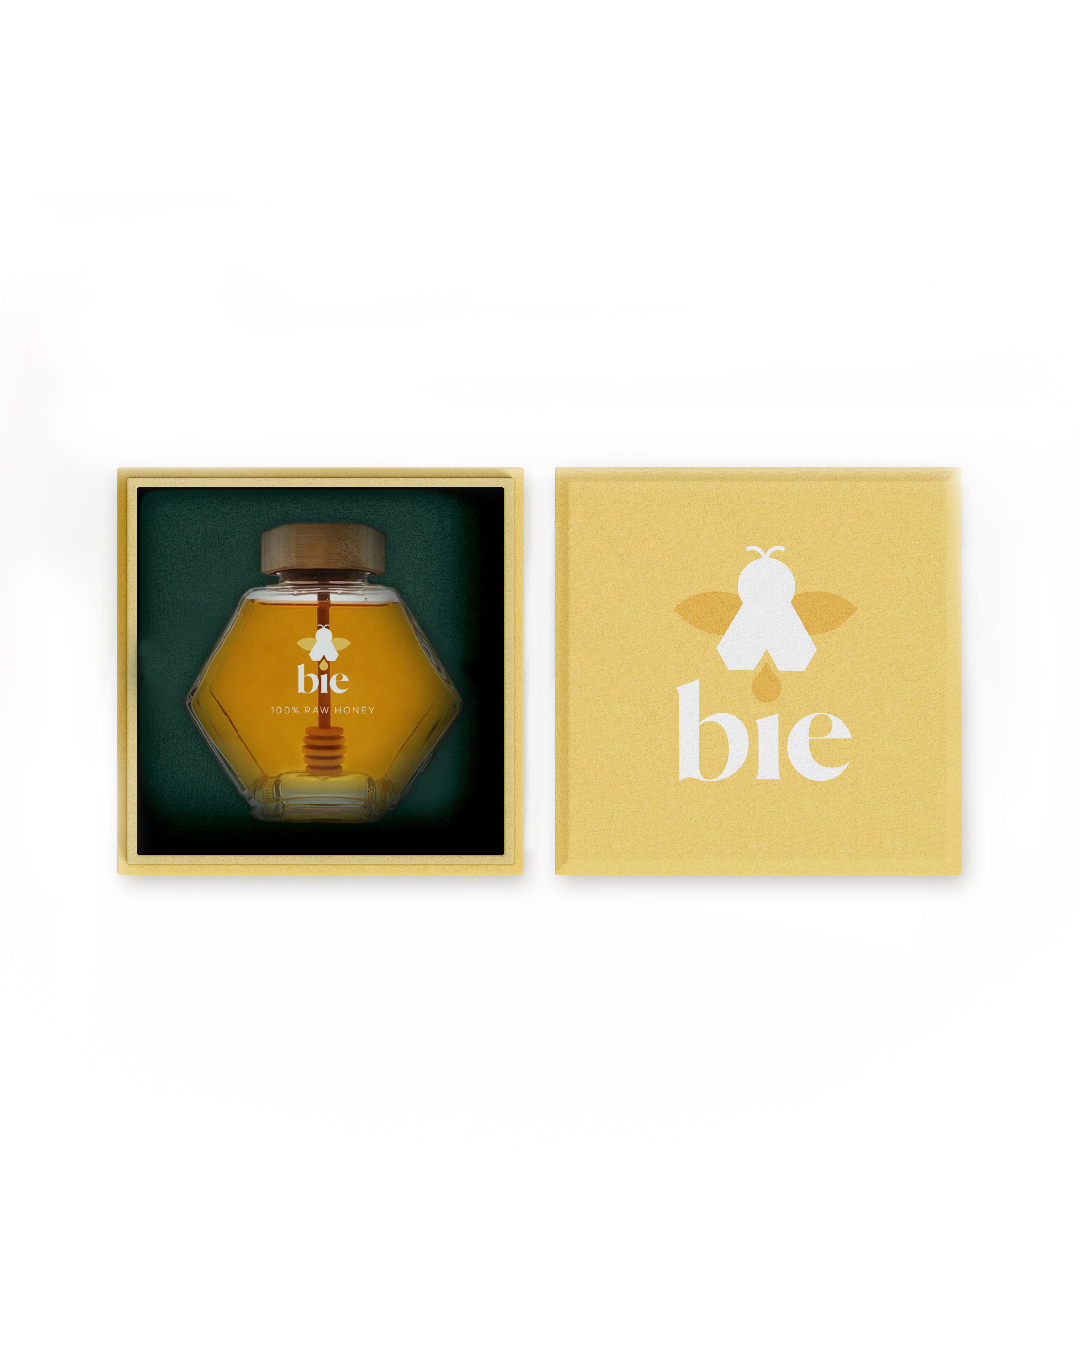 Bie蜂蜜包装设计